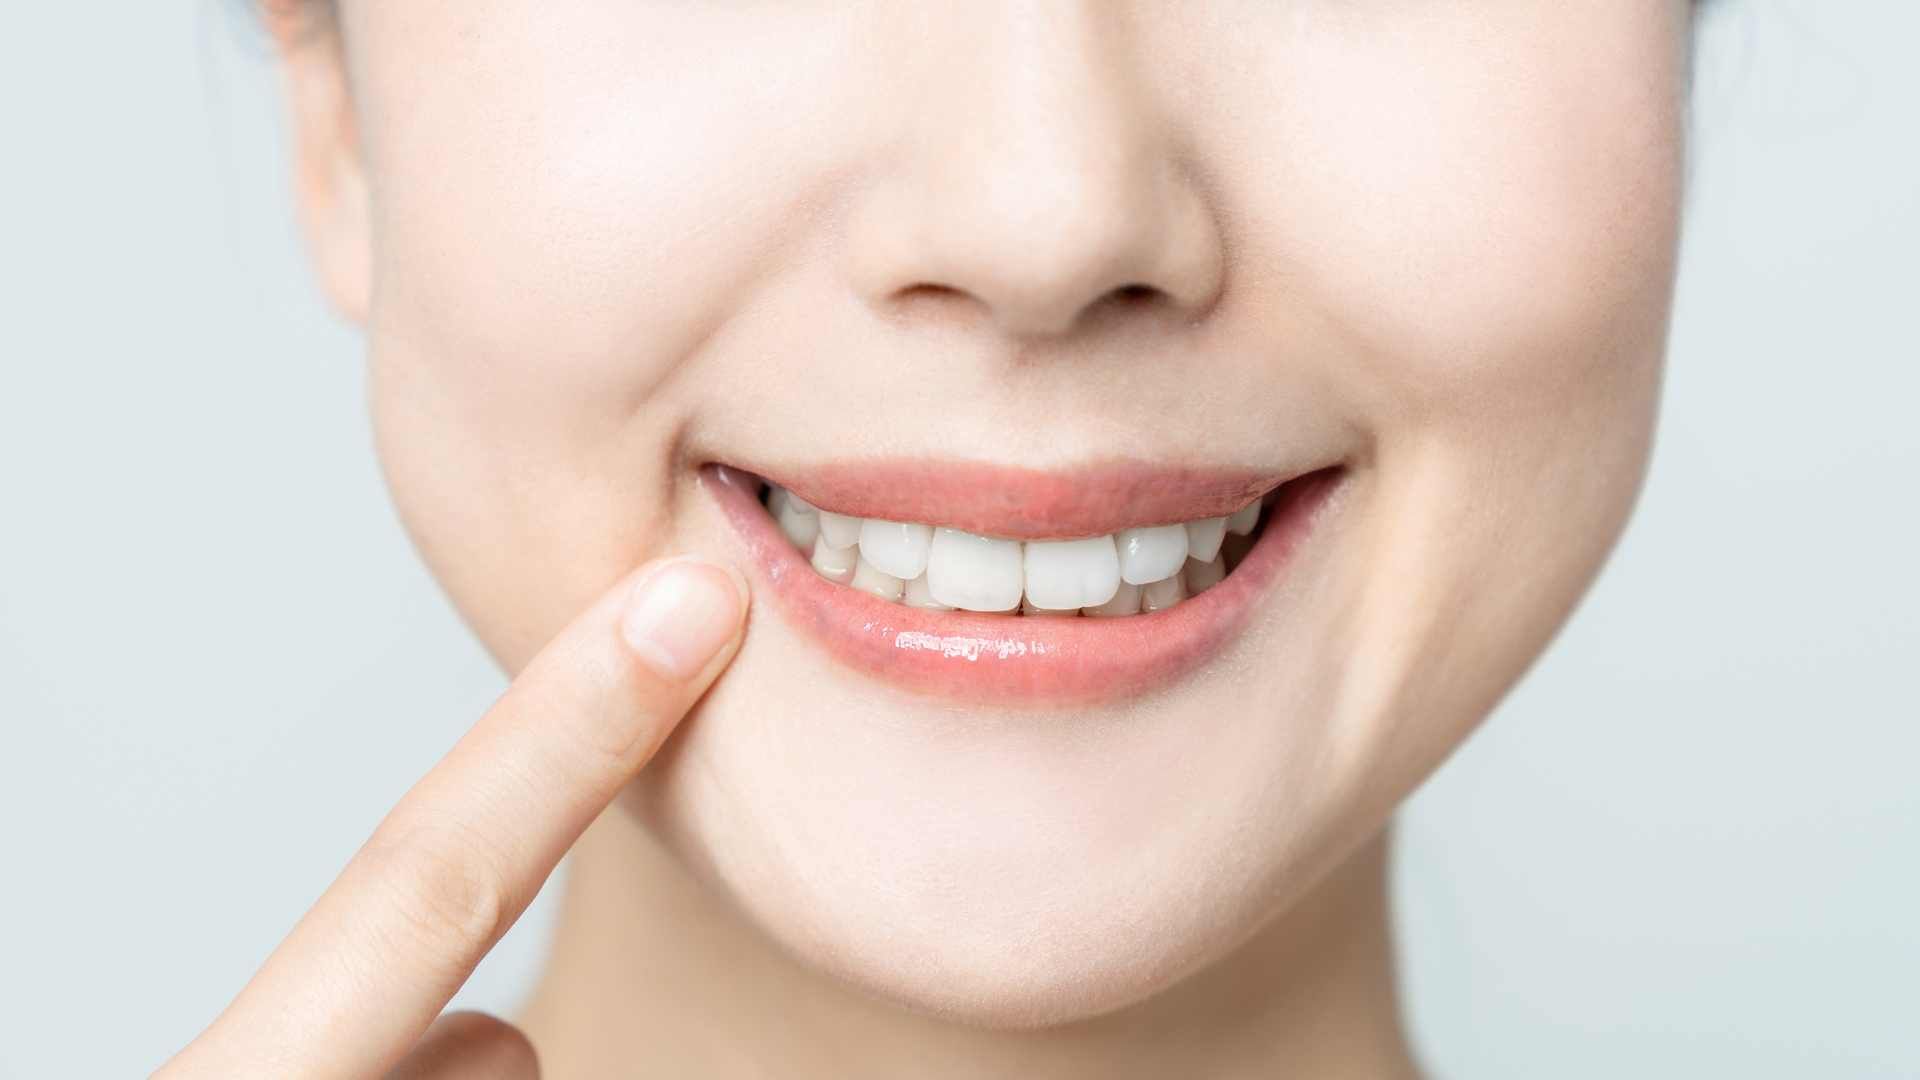 پرکردن دندان یک سطحی با کامپوزیت آلمانی دکتر ثنا نوری وند در تبریز 1